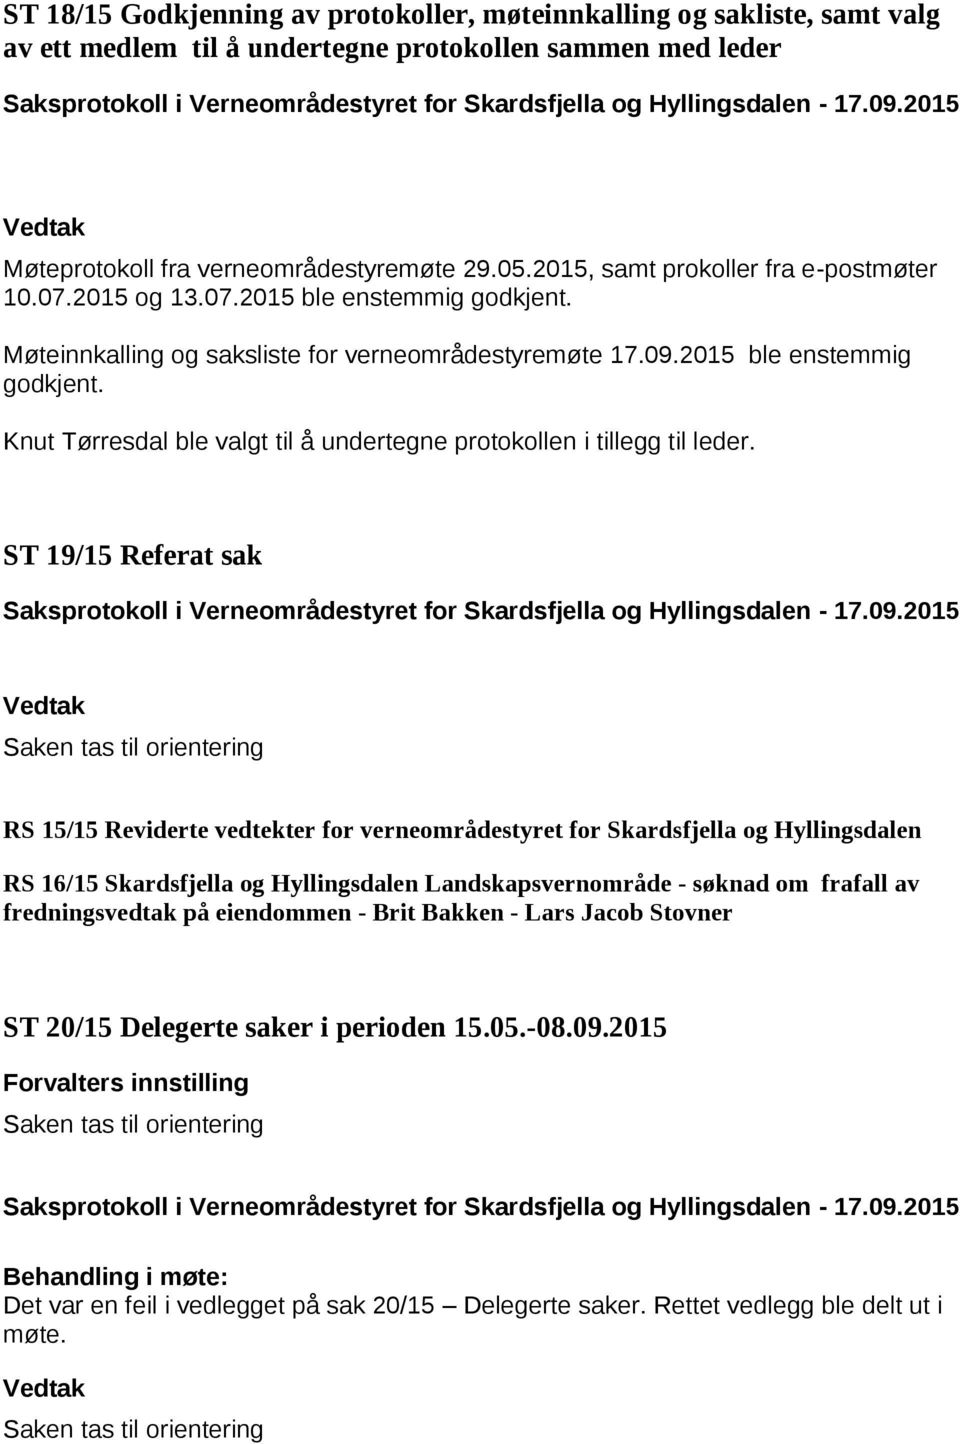 Møteinnkalling og saksliste for verneområdestyremøte 17.09.2015 ble enstemmig godkjent. Knut Tørresdal ble valgt til å undertegne protokollen i tillegg til leder.